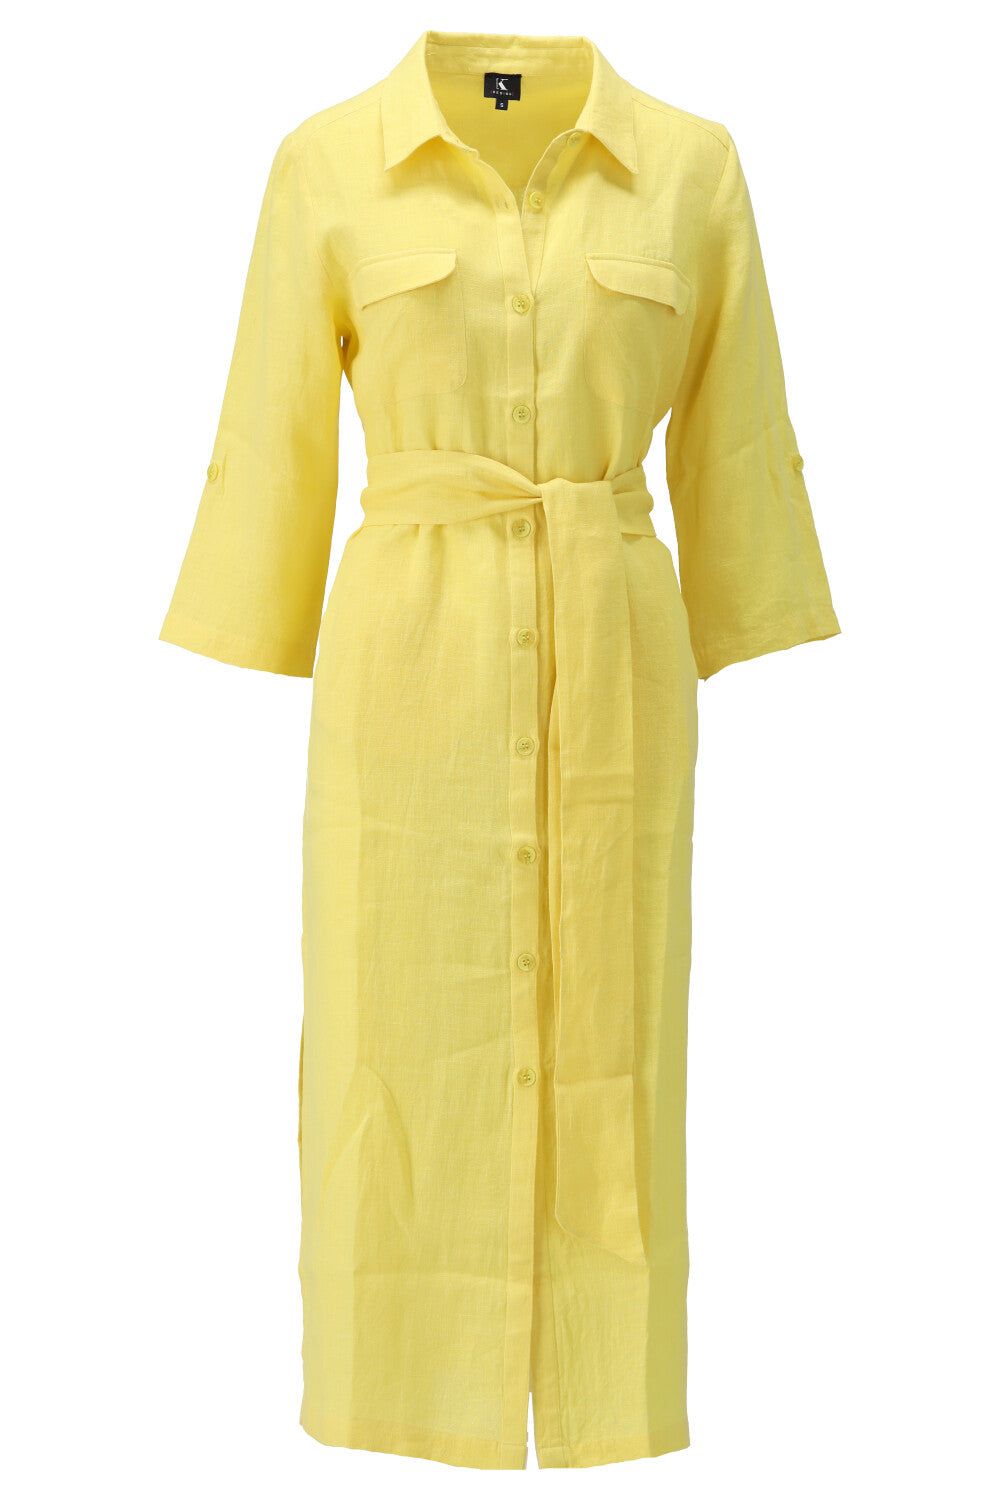 K-Design K-Design - Maxi dress met zakjes, knopen, slip en riem (U603) - What Els!